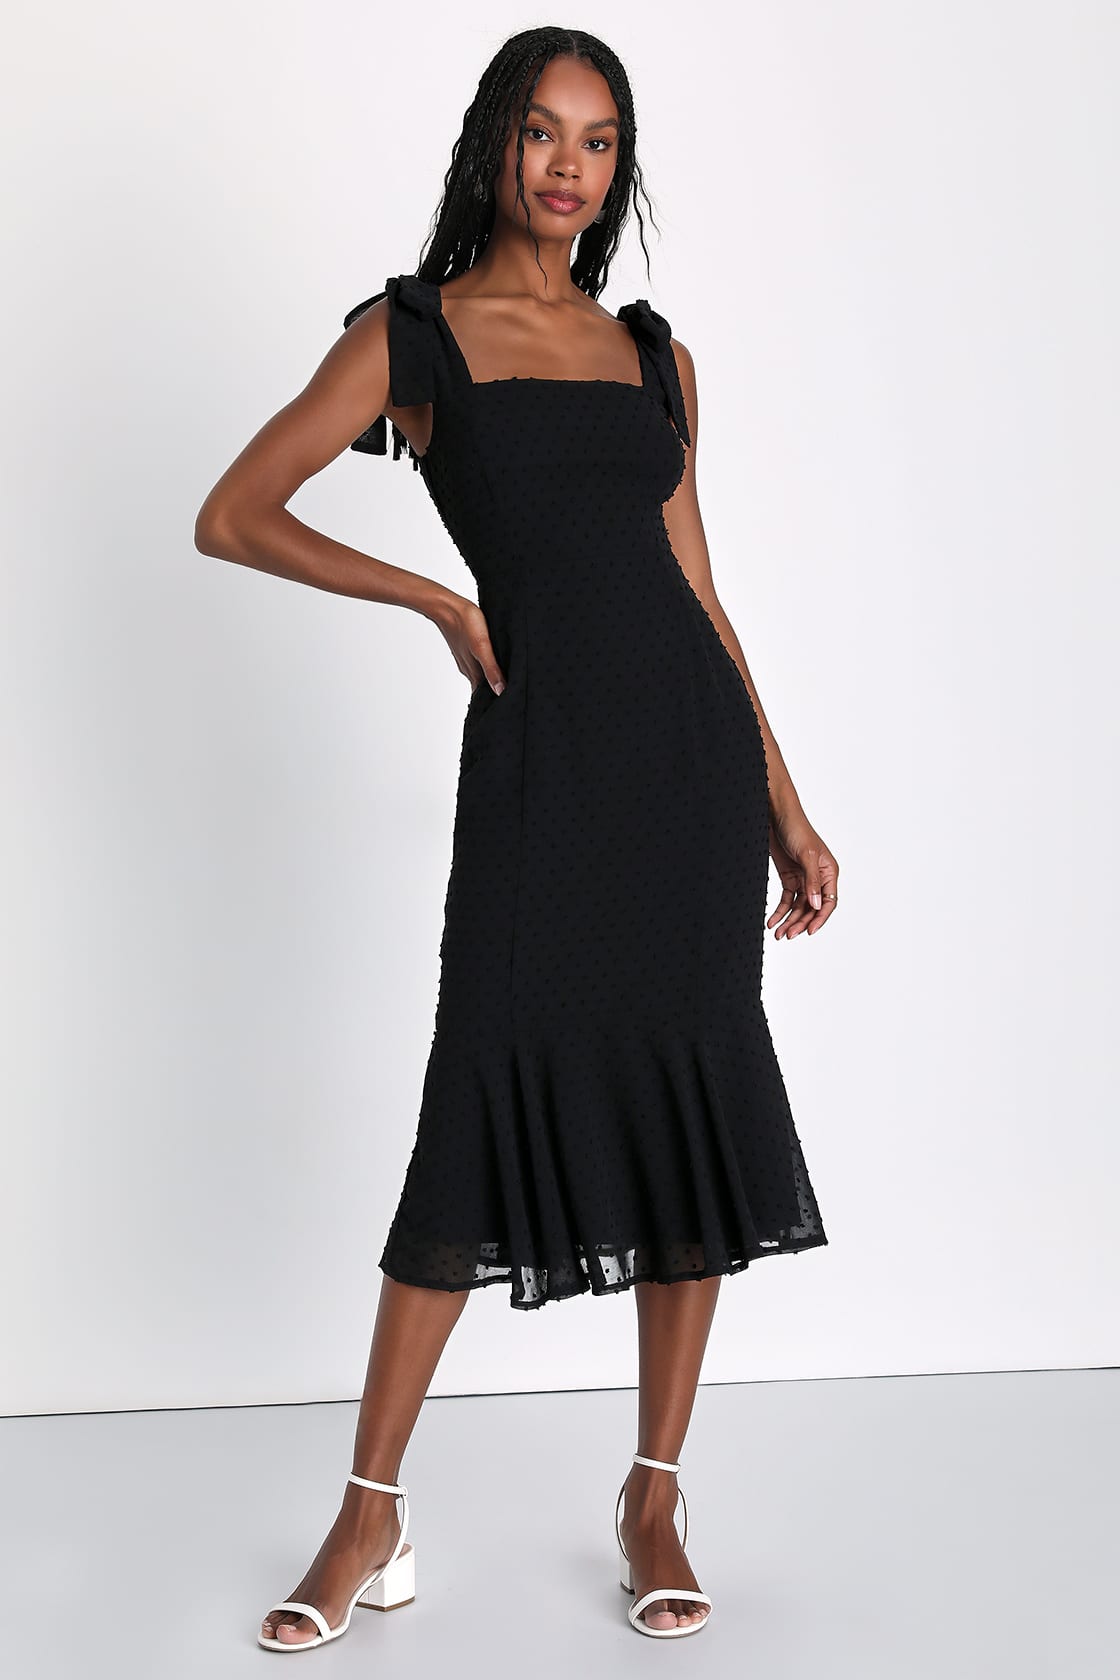 Bimini Black Swiss Dot Tie-Strap Midi Dress